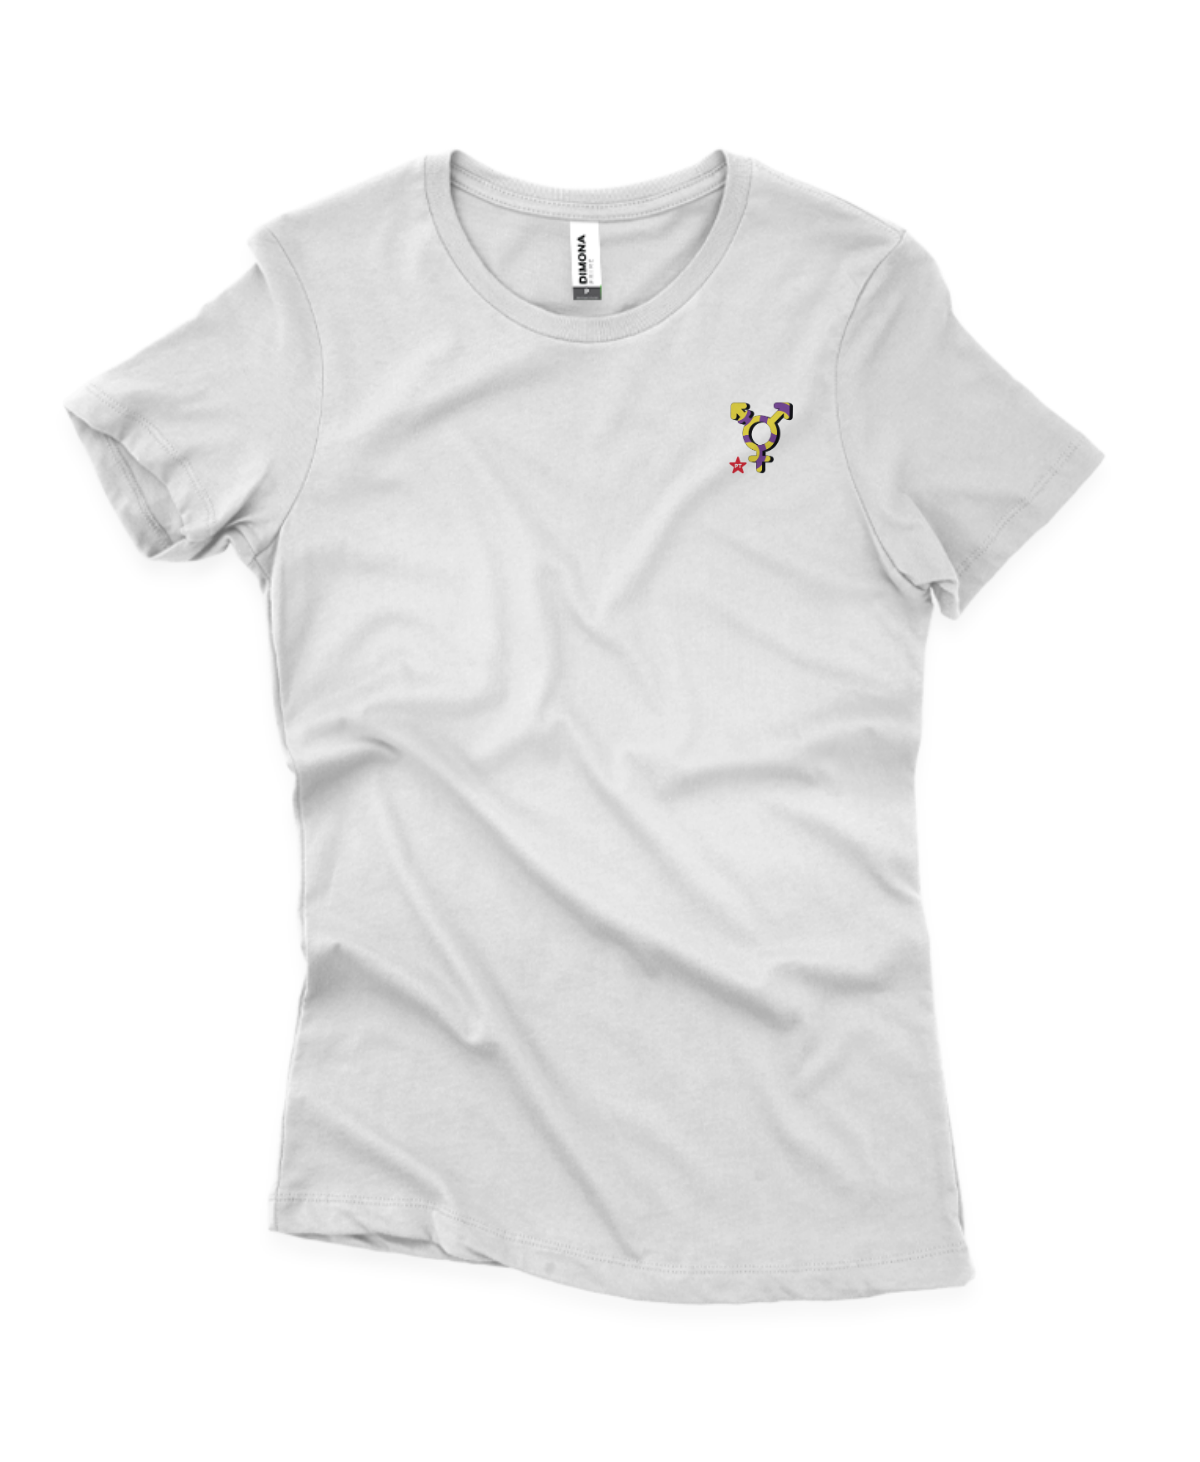 Camiseta Feminina Símbolo da Visibilidade Intersexo